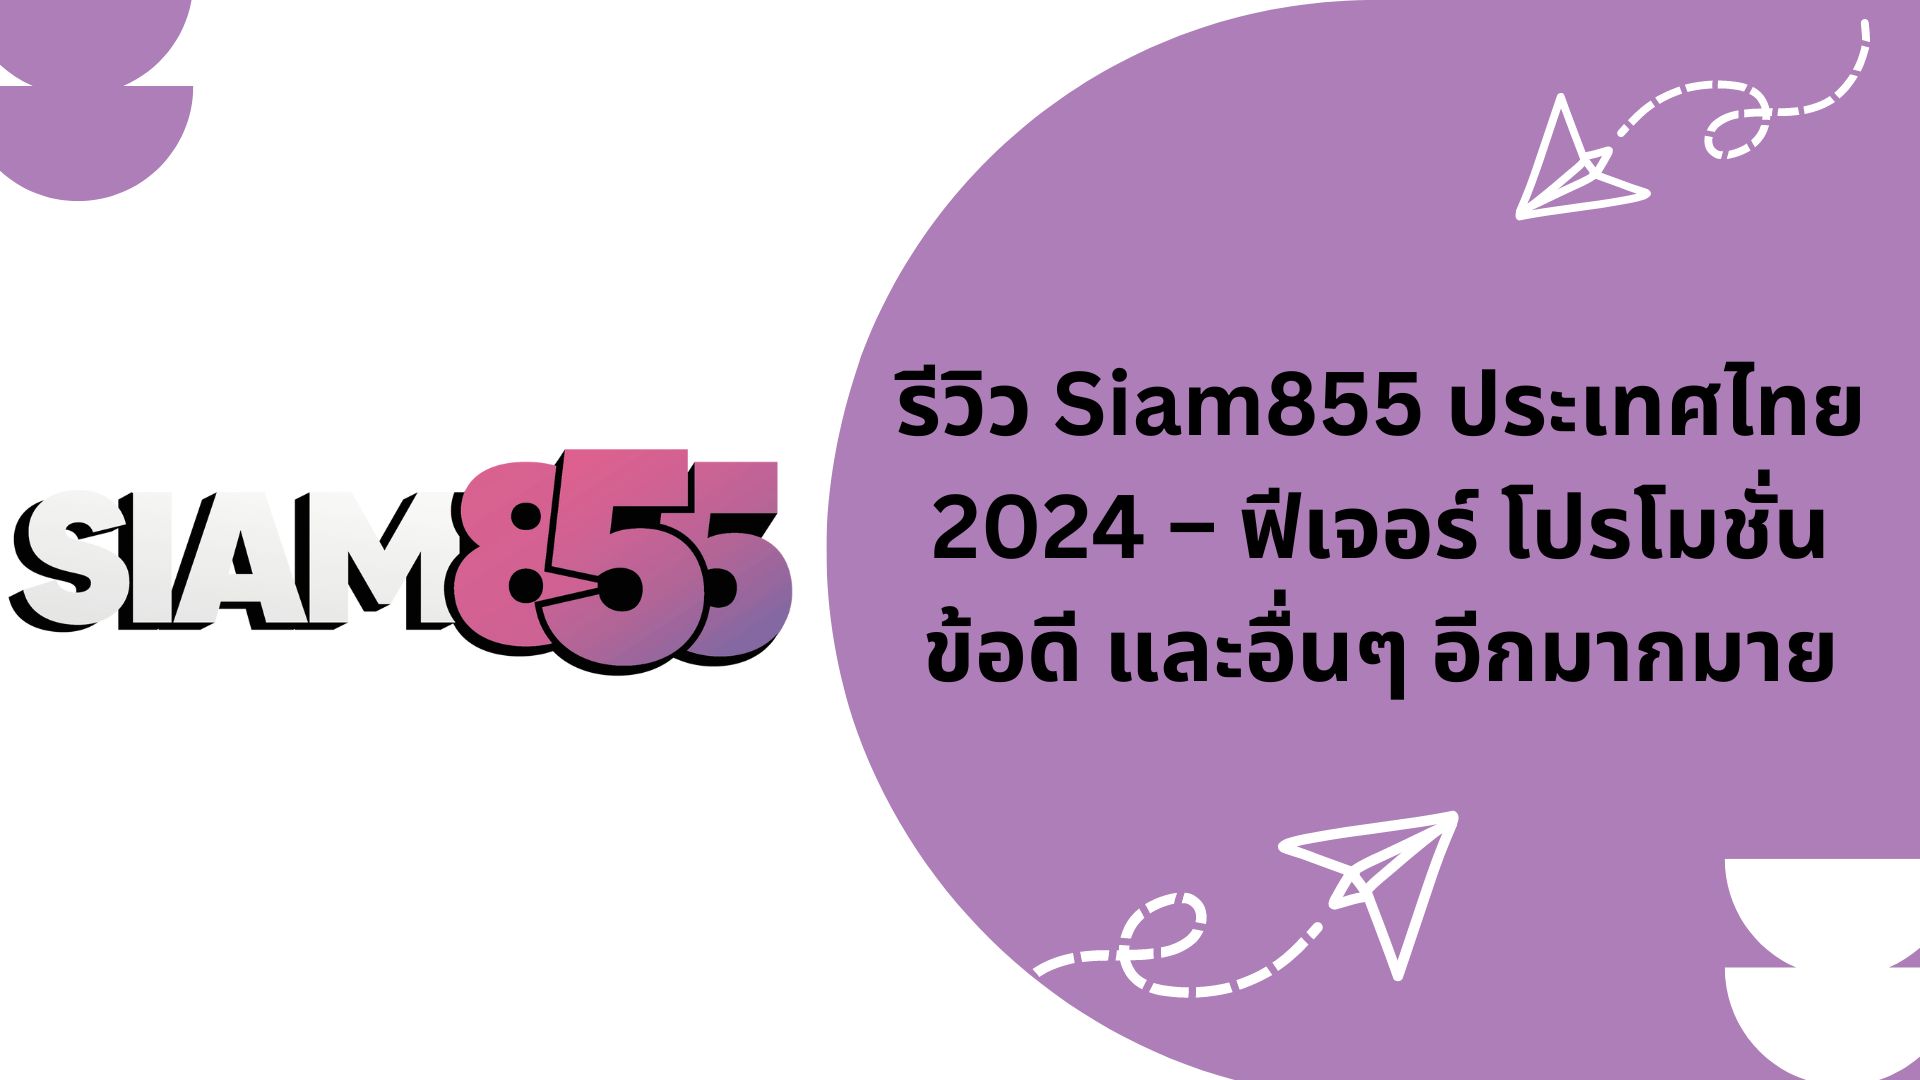 รีวิว Siam855 ประเทศไทย 2024